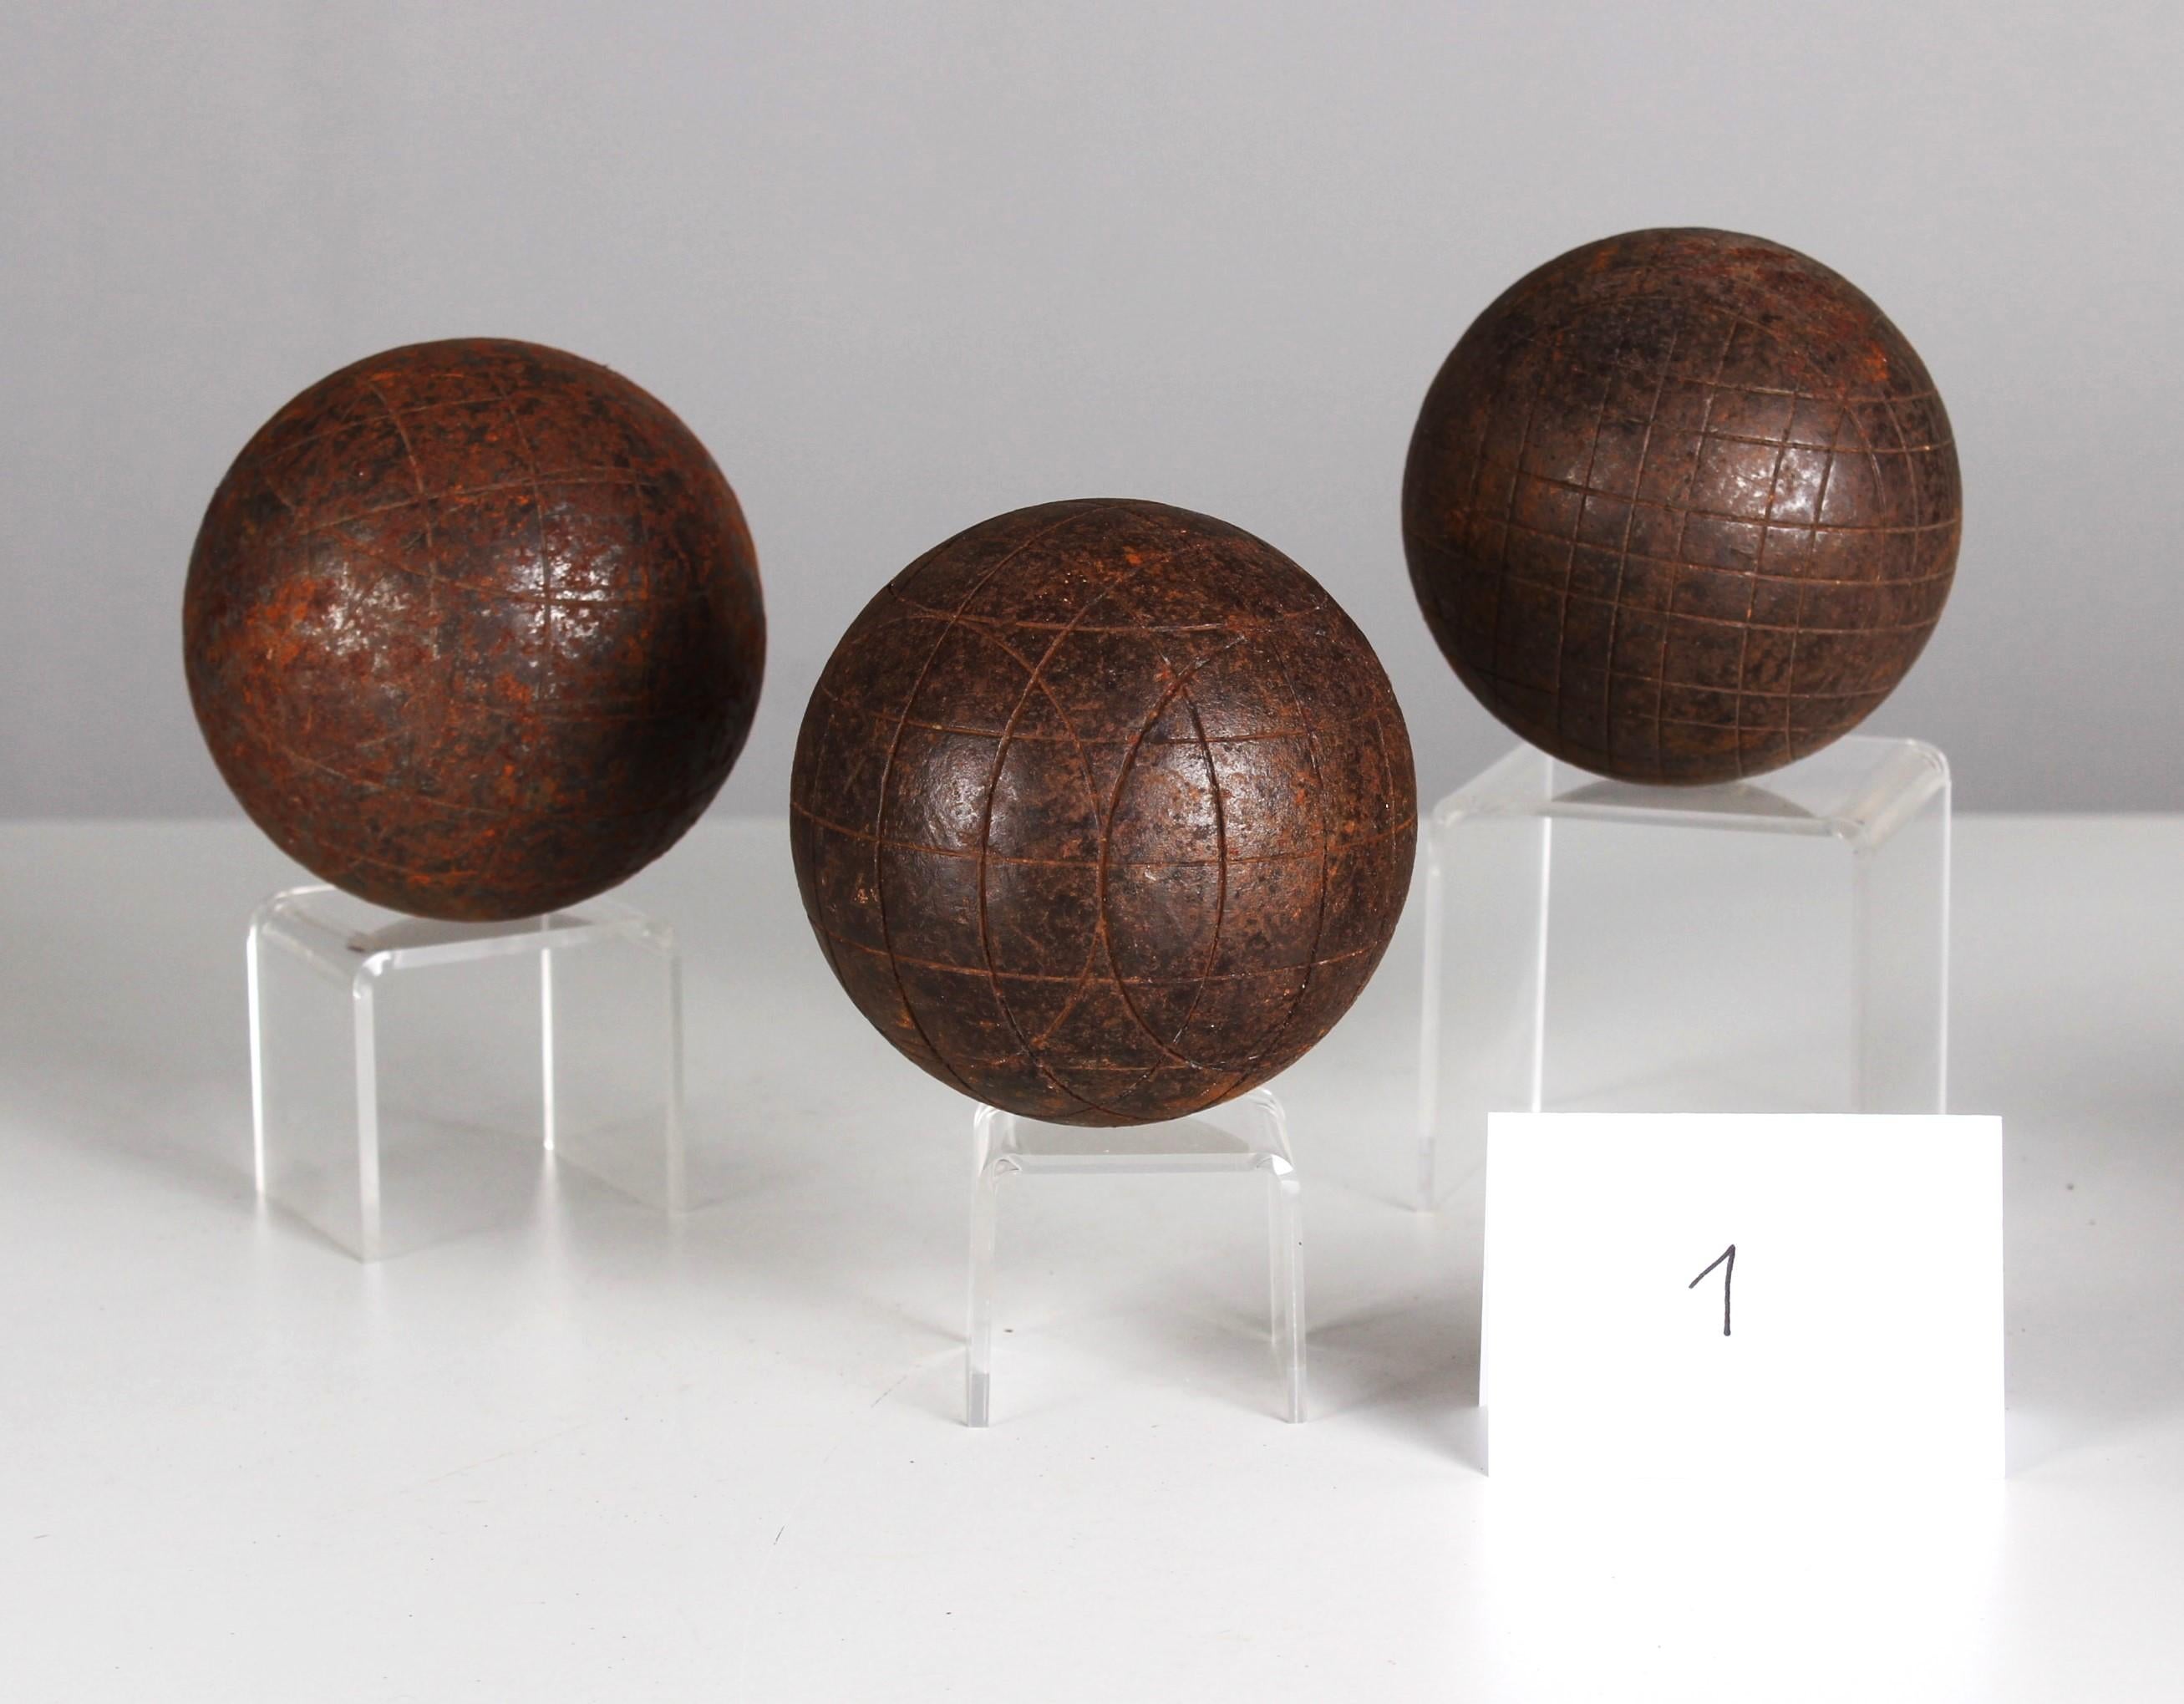 Metal Antique Boule Set, Boule Balls, Pétanque, 1880s, France, Craftsmanship For Sale